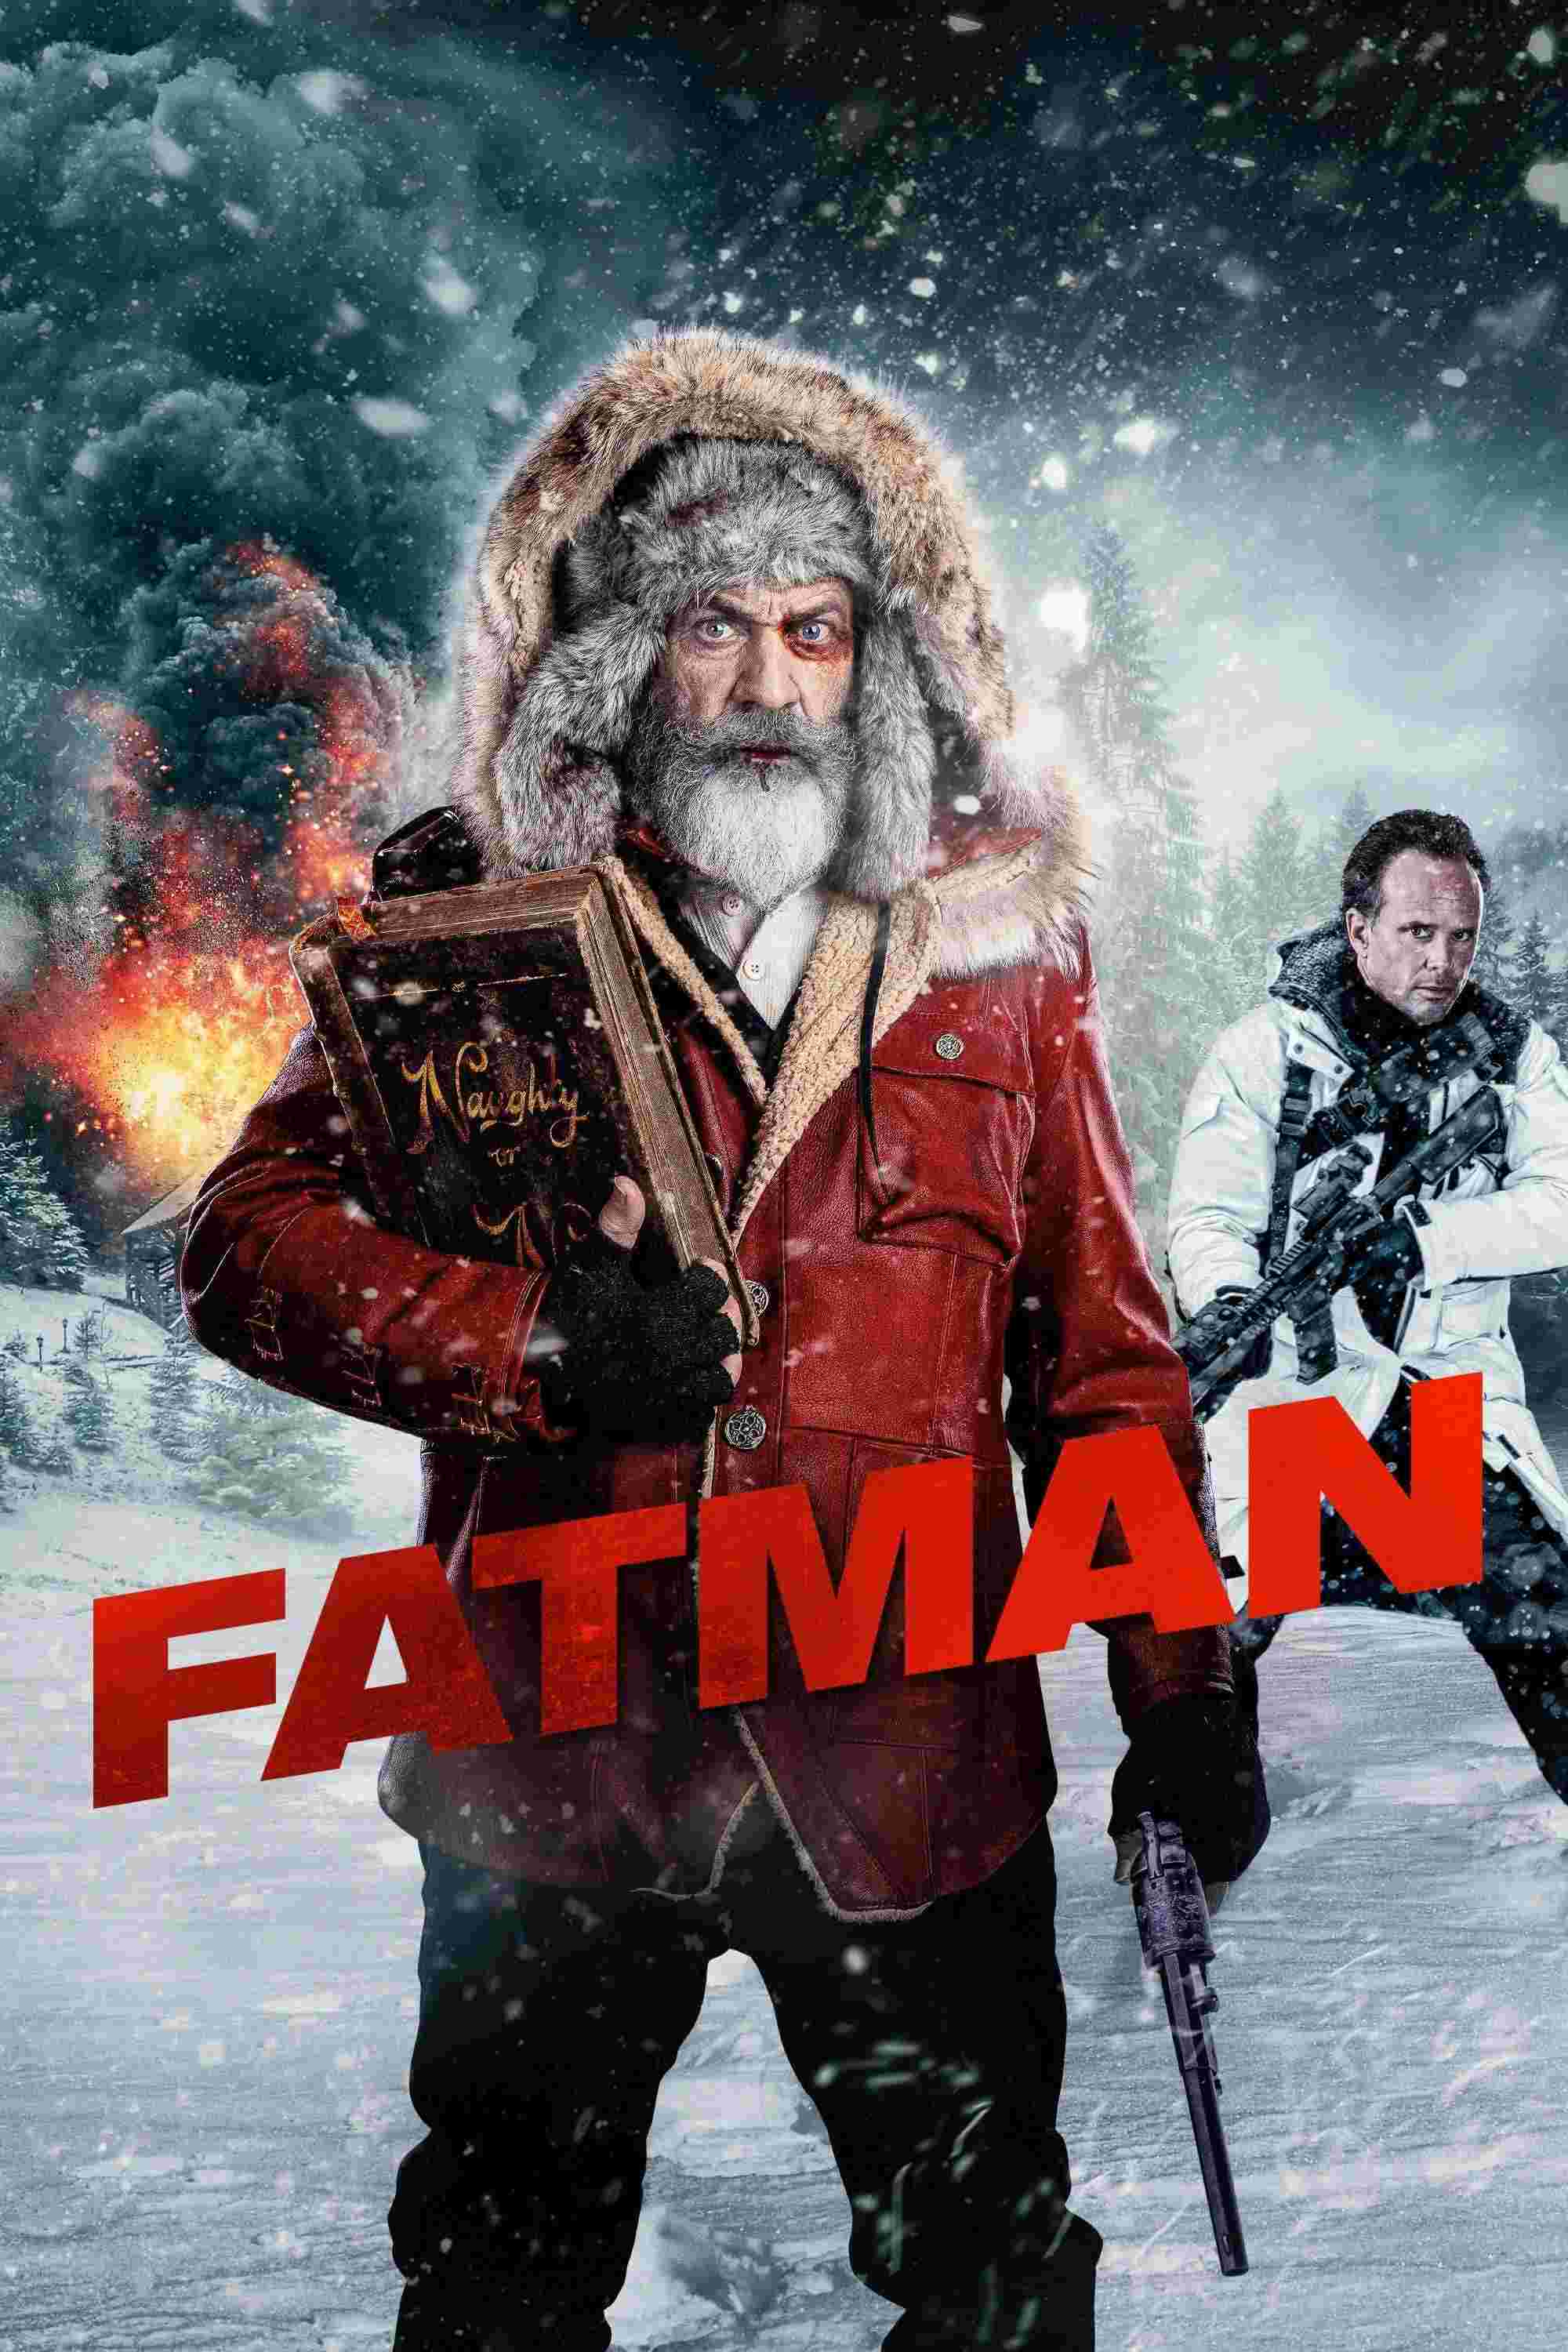 Fatman (2020) Mel Gibson